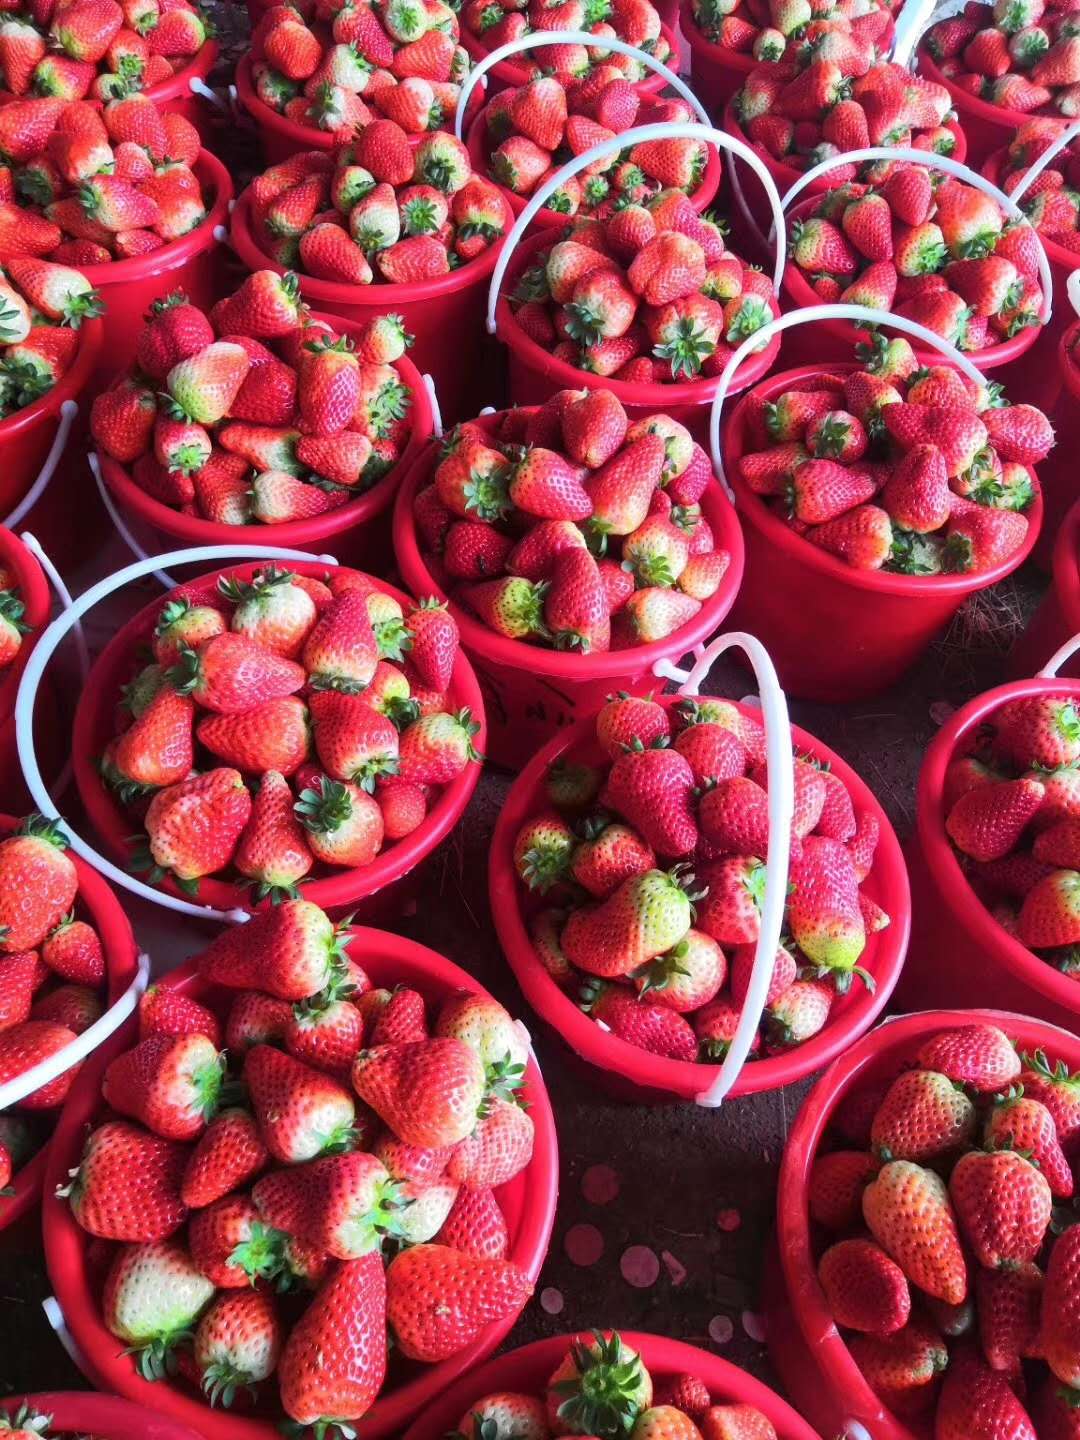 蒙特瑞草莓苗管理技术、甜宝草莓苗栽种时间